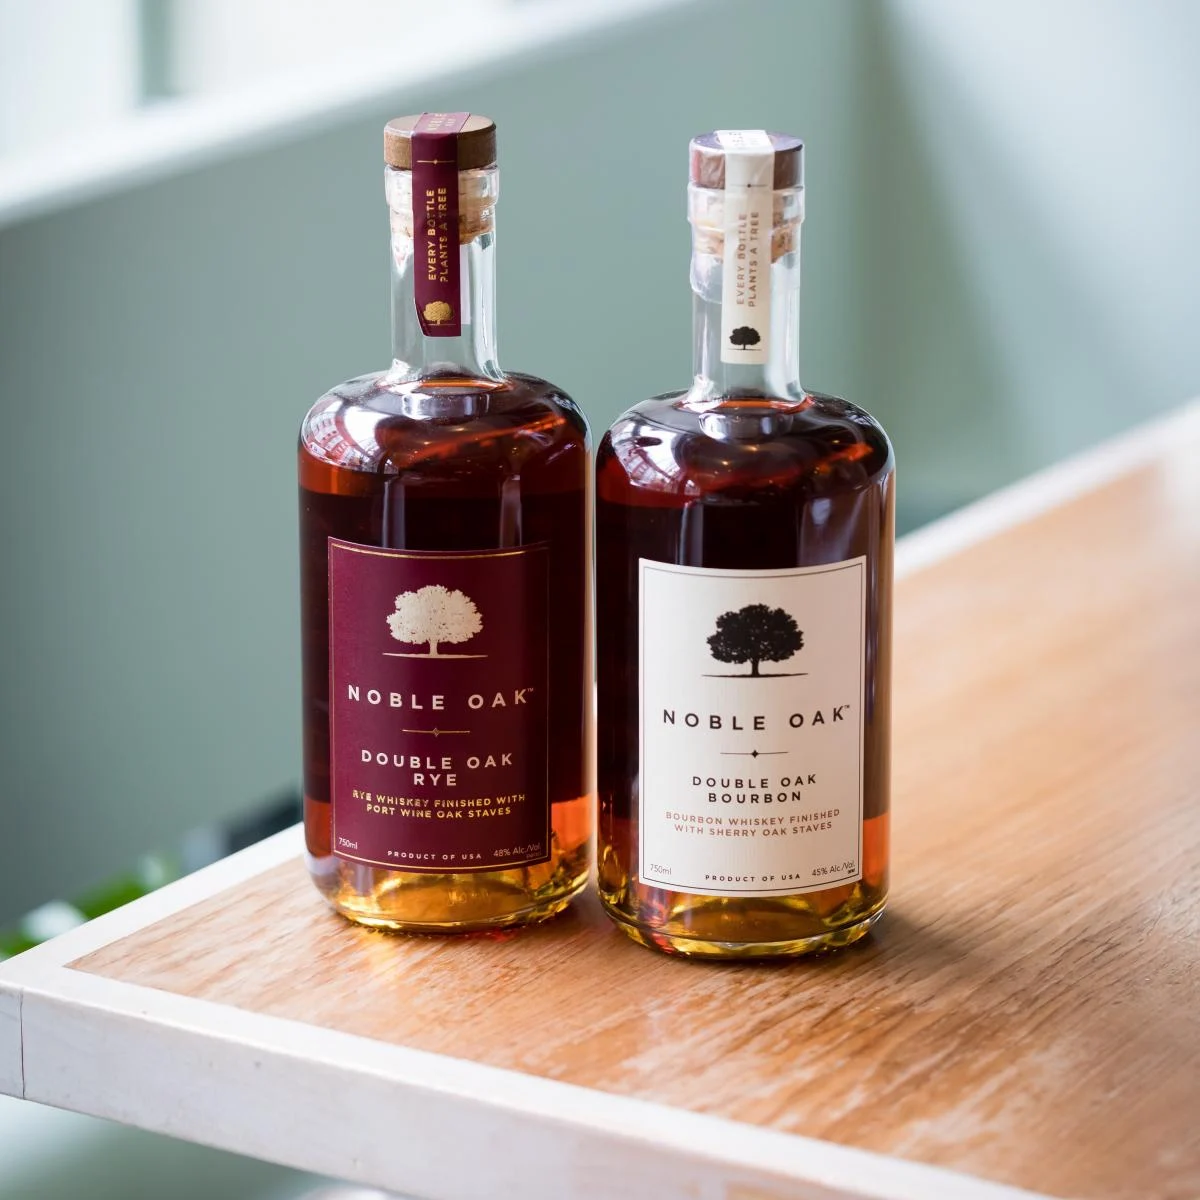 Noble Oak Bourbon and Rye whiskies. Image courtesy Edrington.